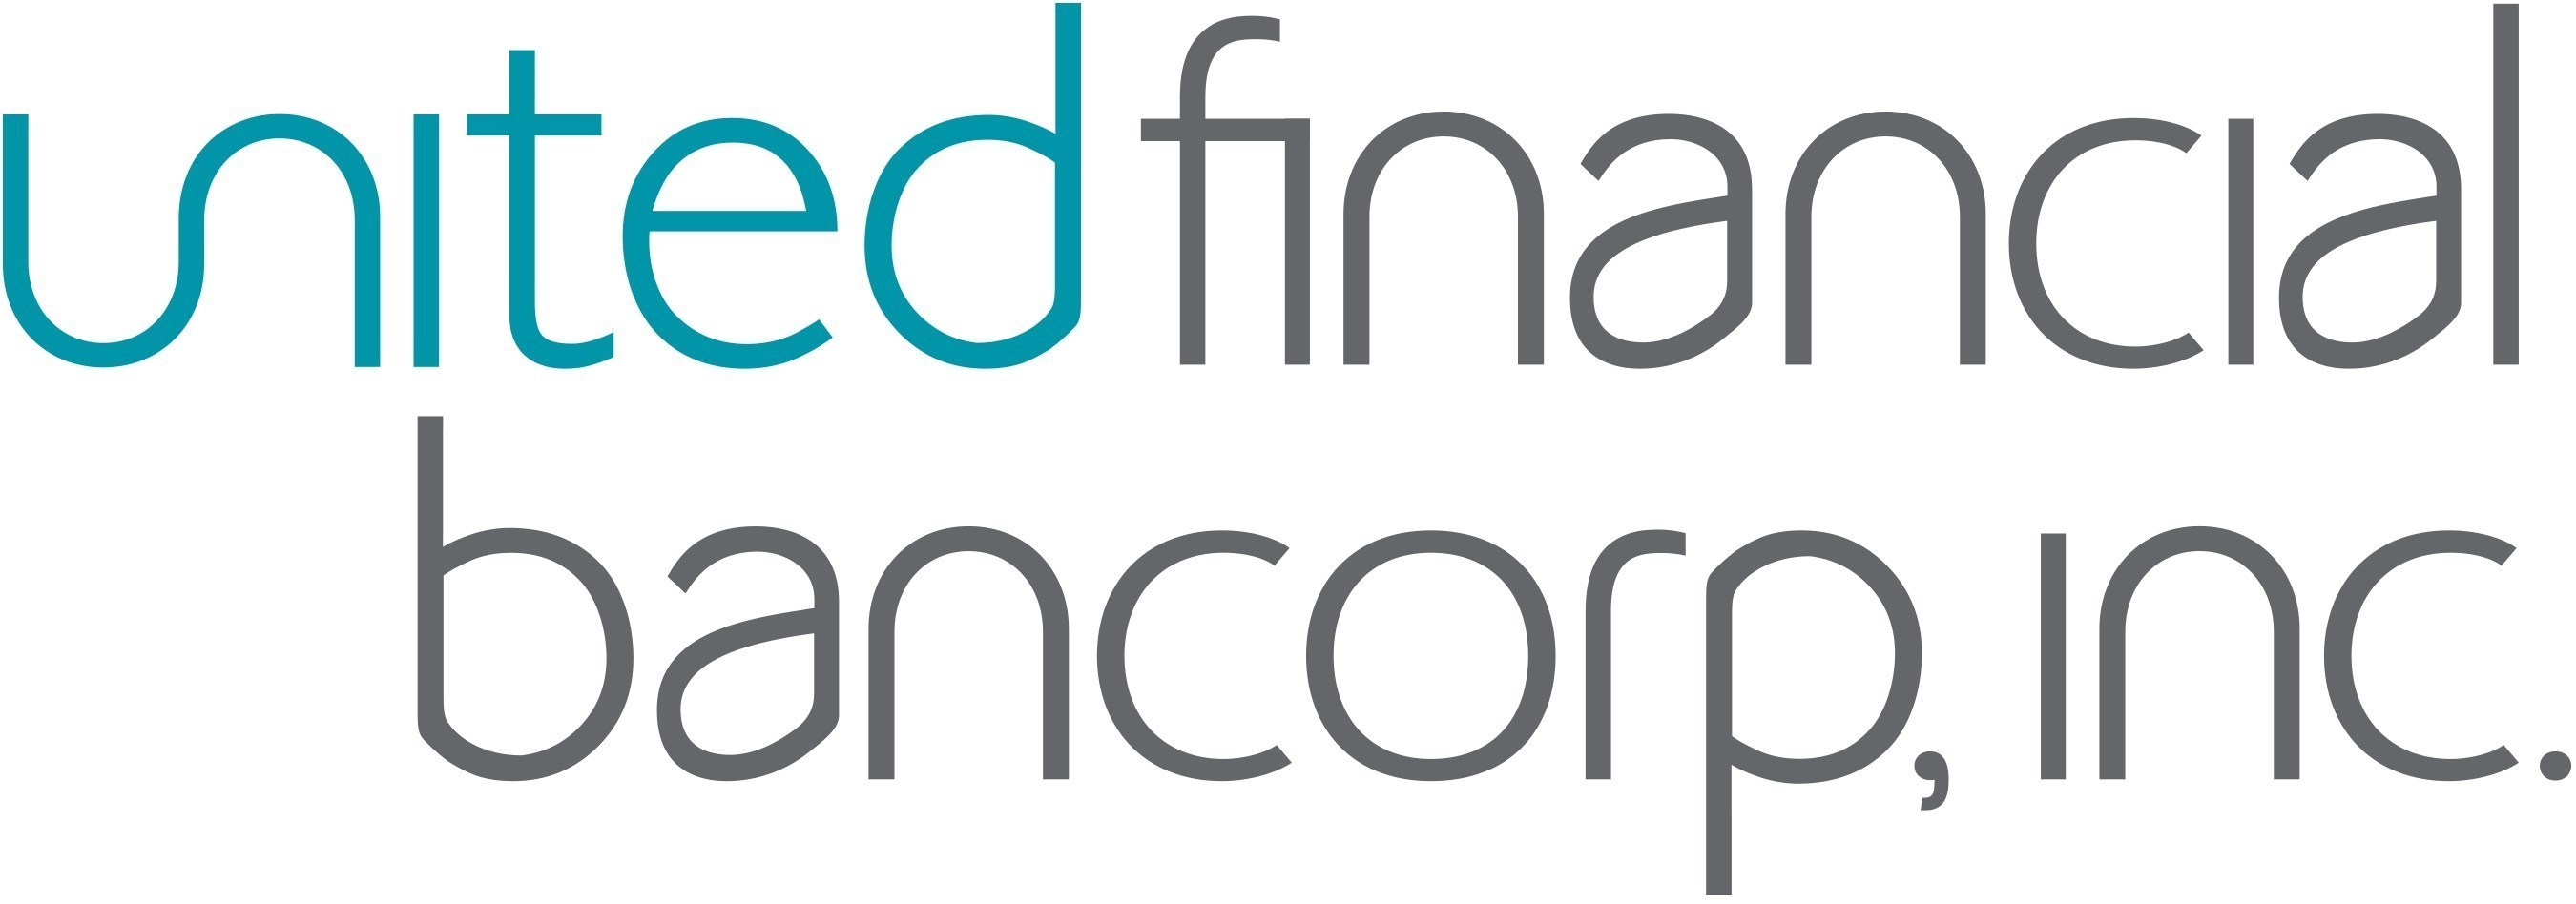 United Financial Bancorp, Inc. (UBNK) logo